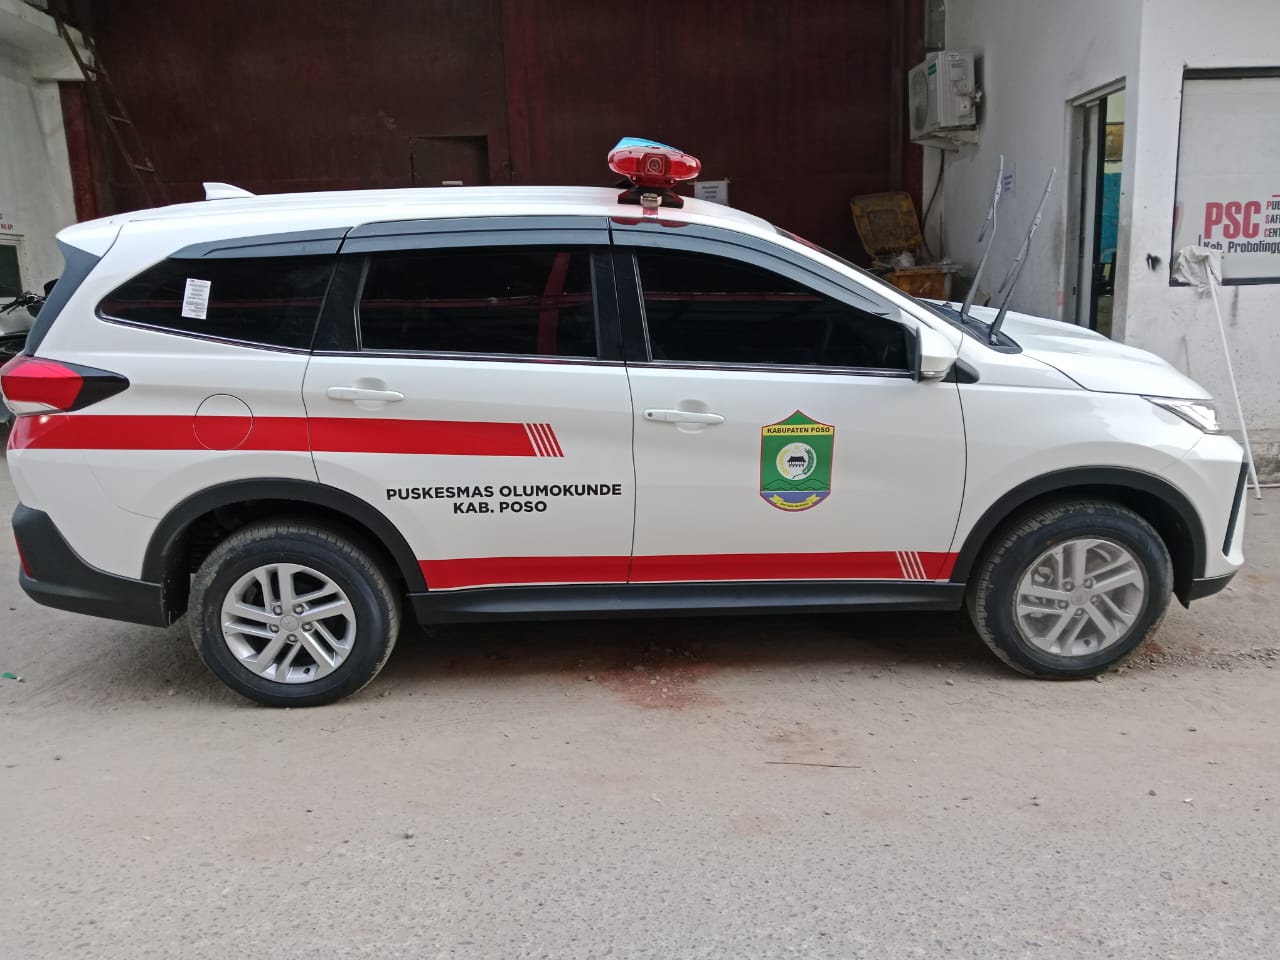 Harga Karoseri Modifikasi Ambulance Berkualitas Mojokerto